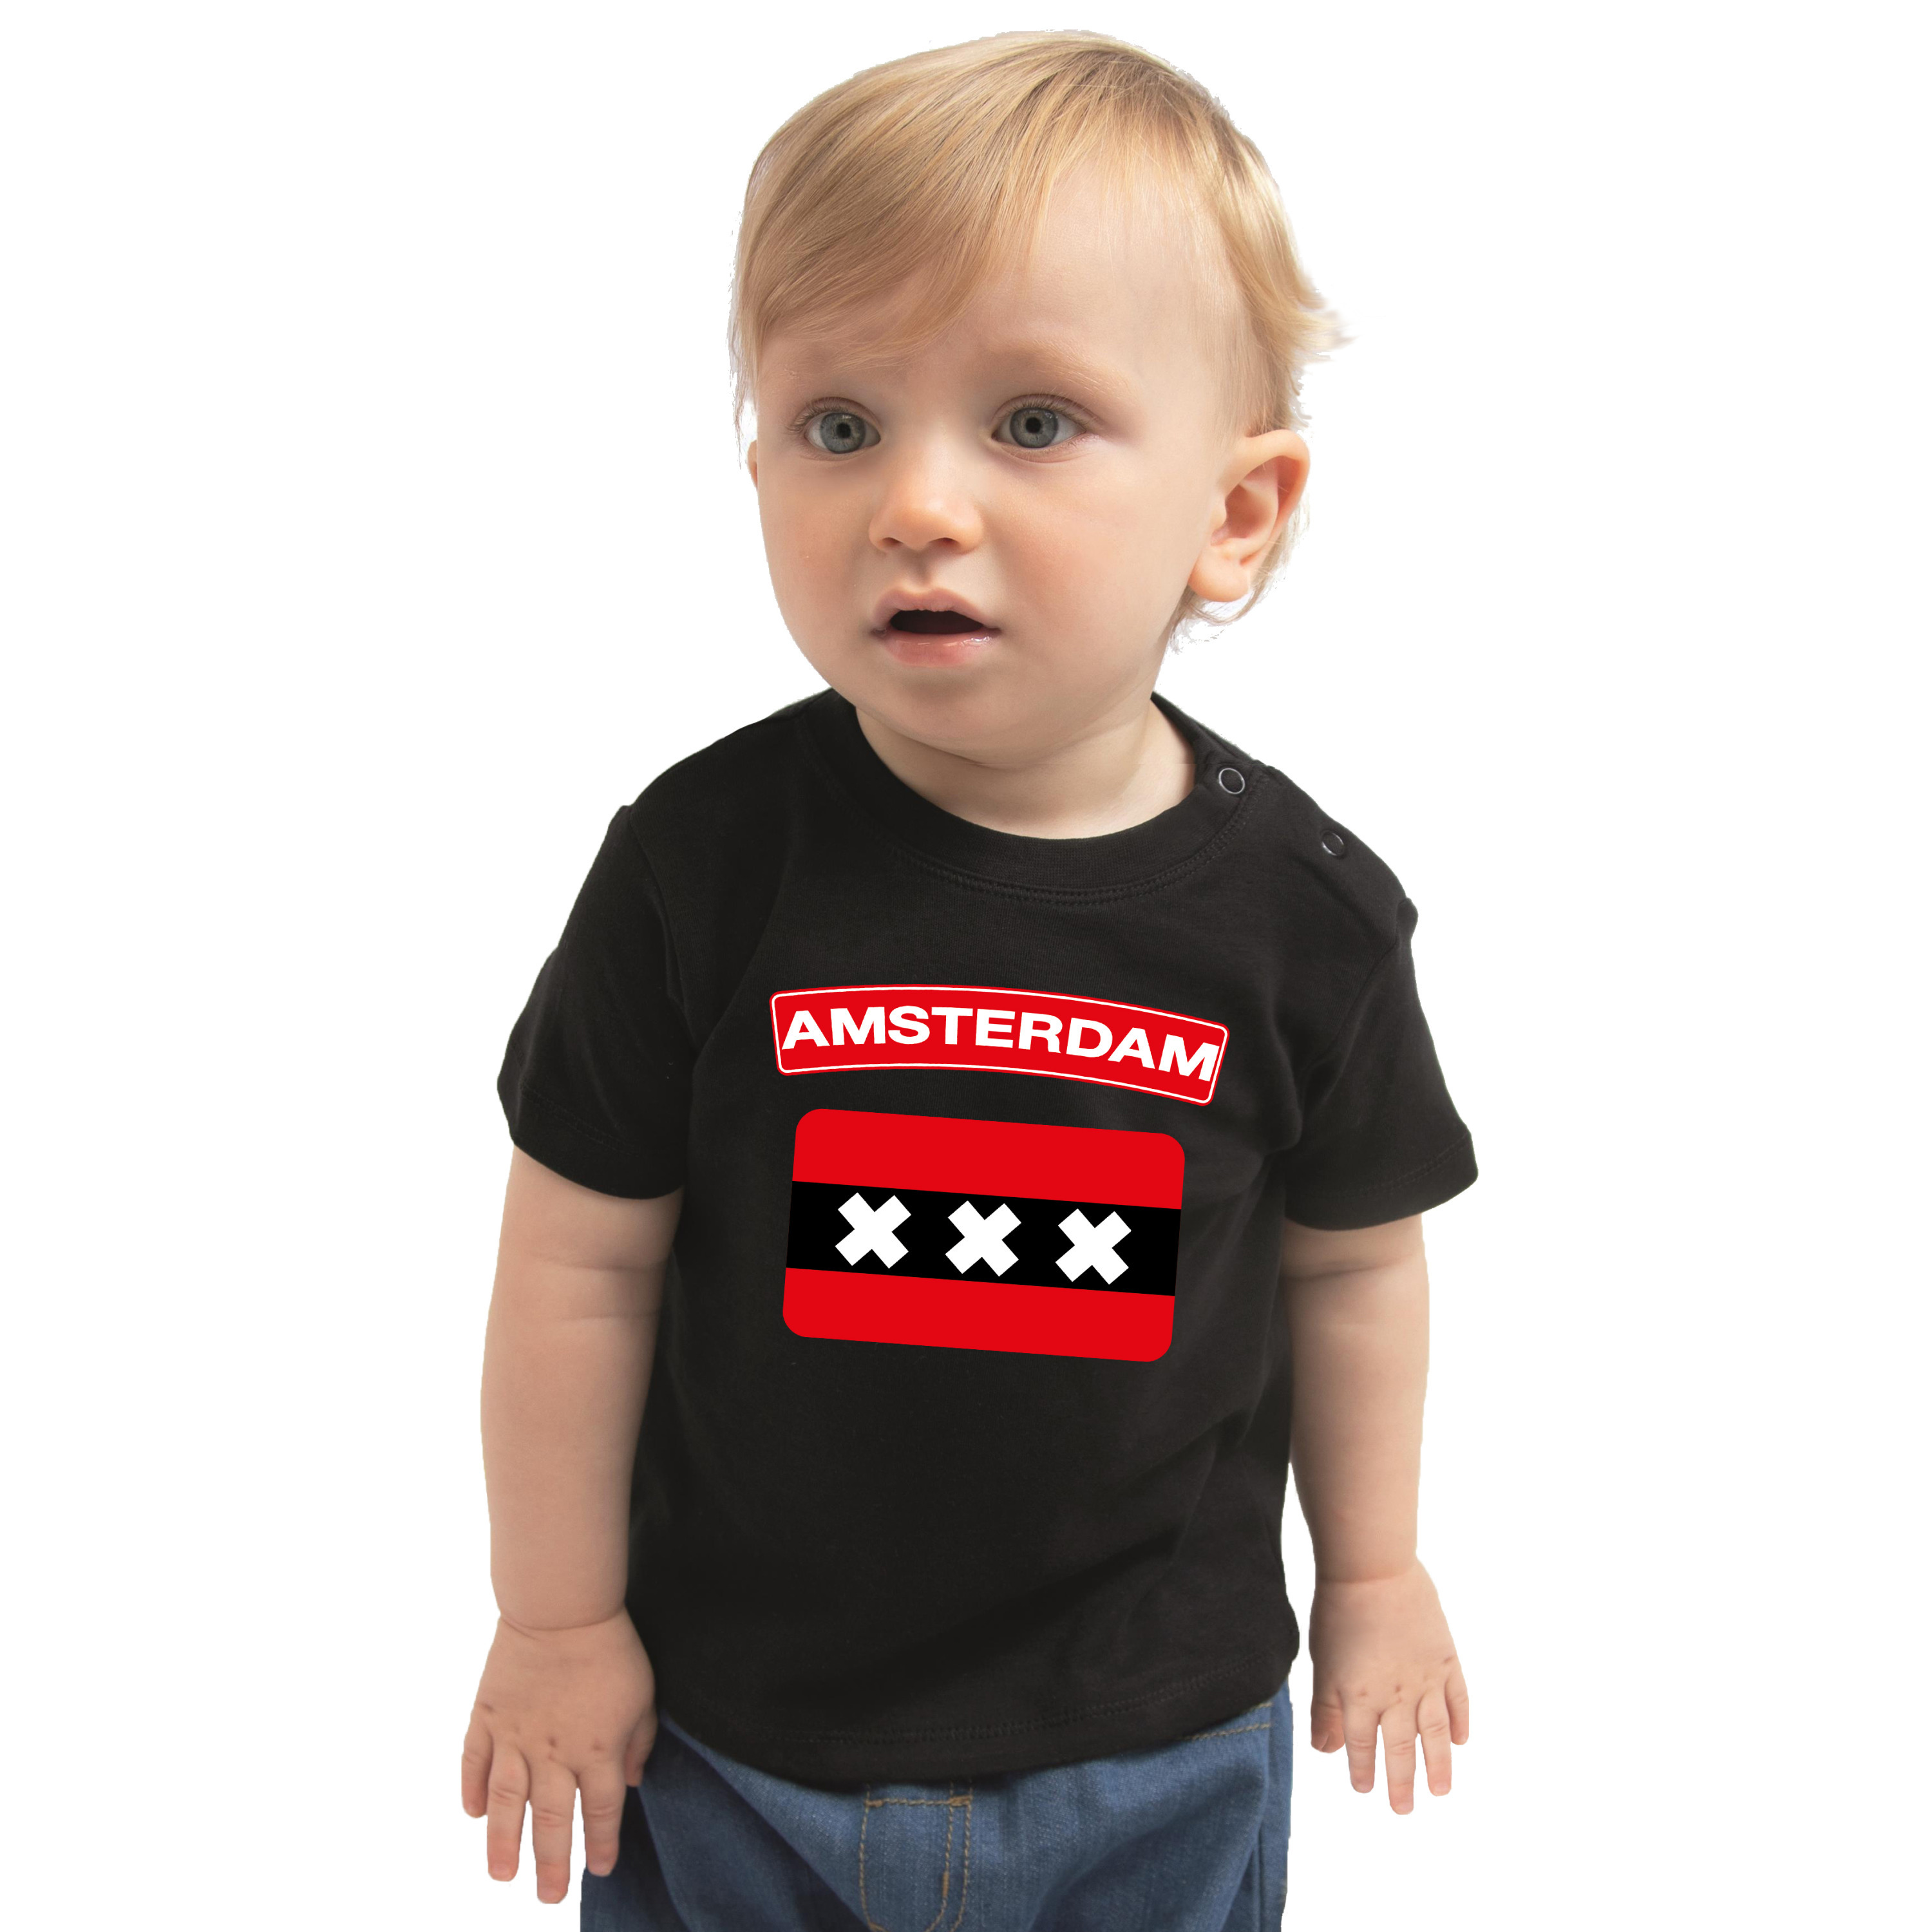 Amsterdam steden shirtje met vlag zwart voor babys